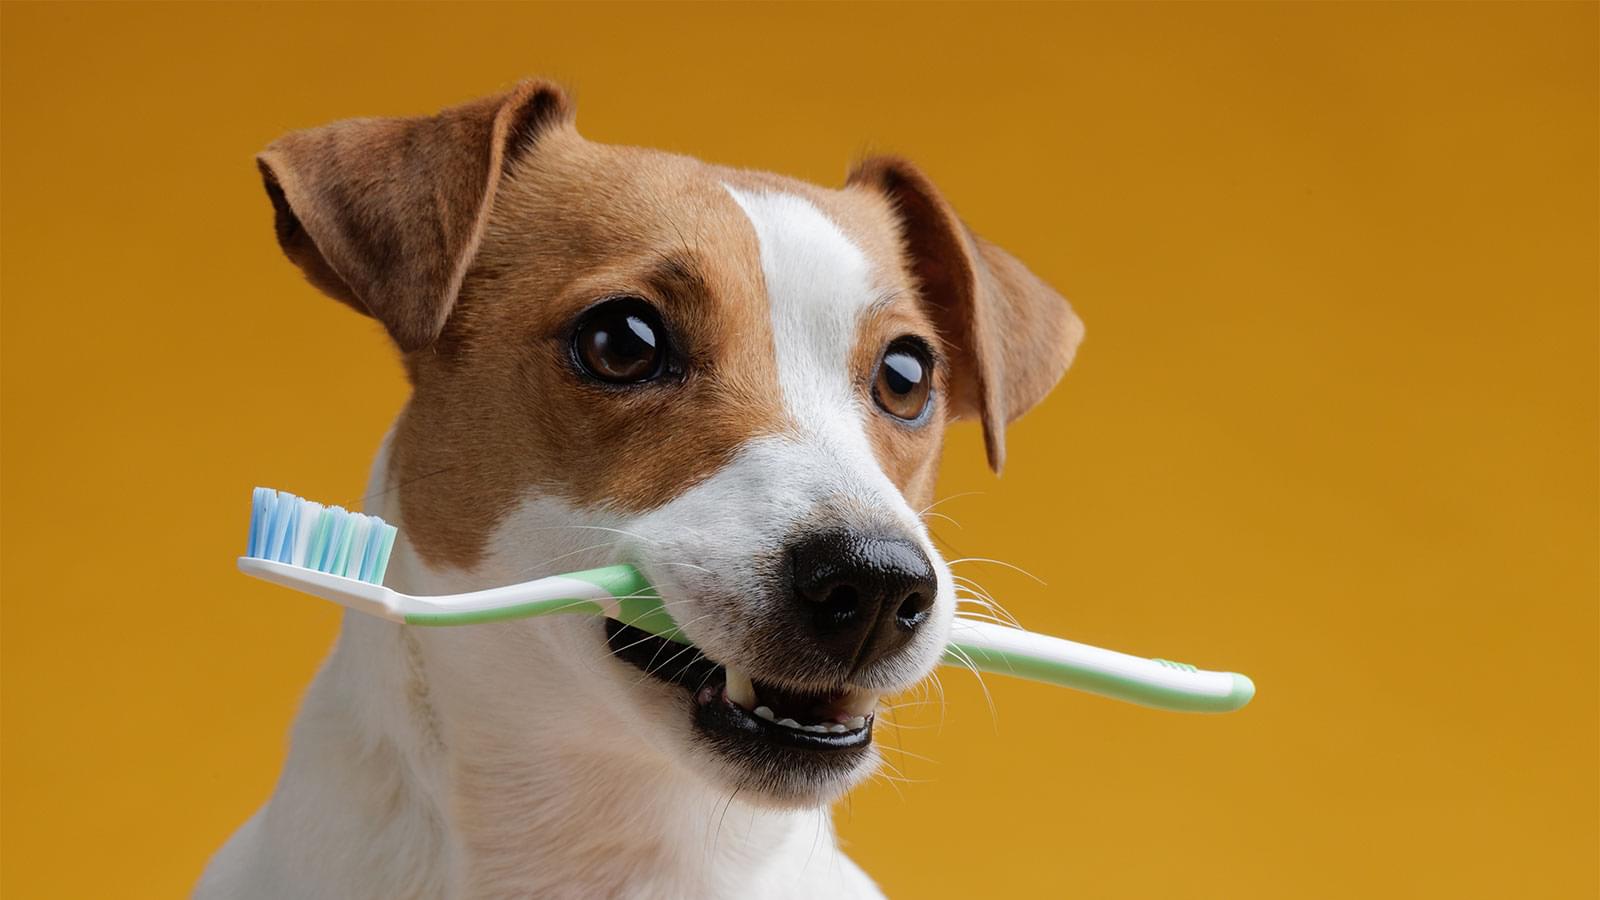 Dog brushing teeths